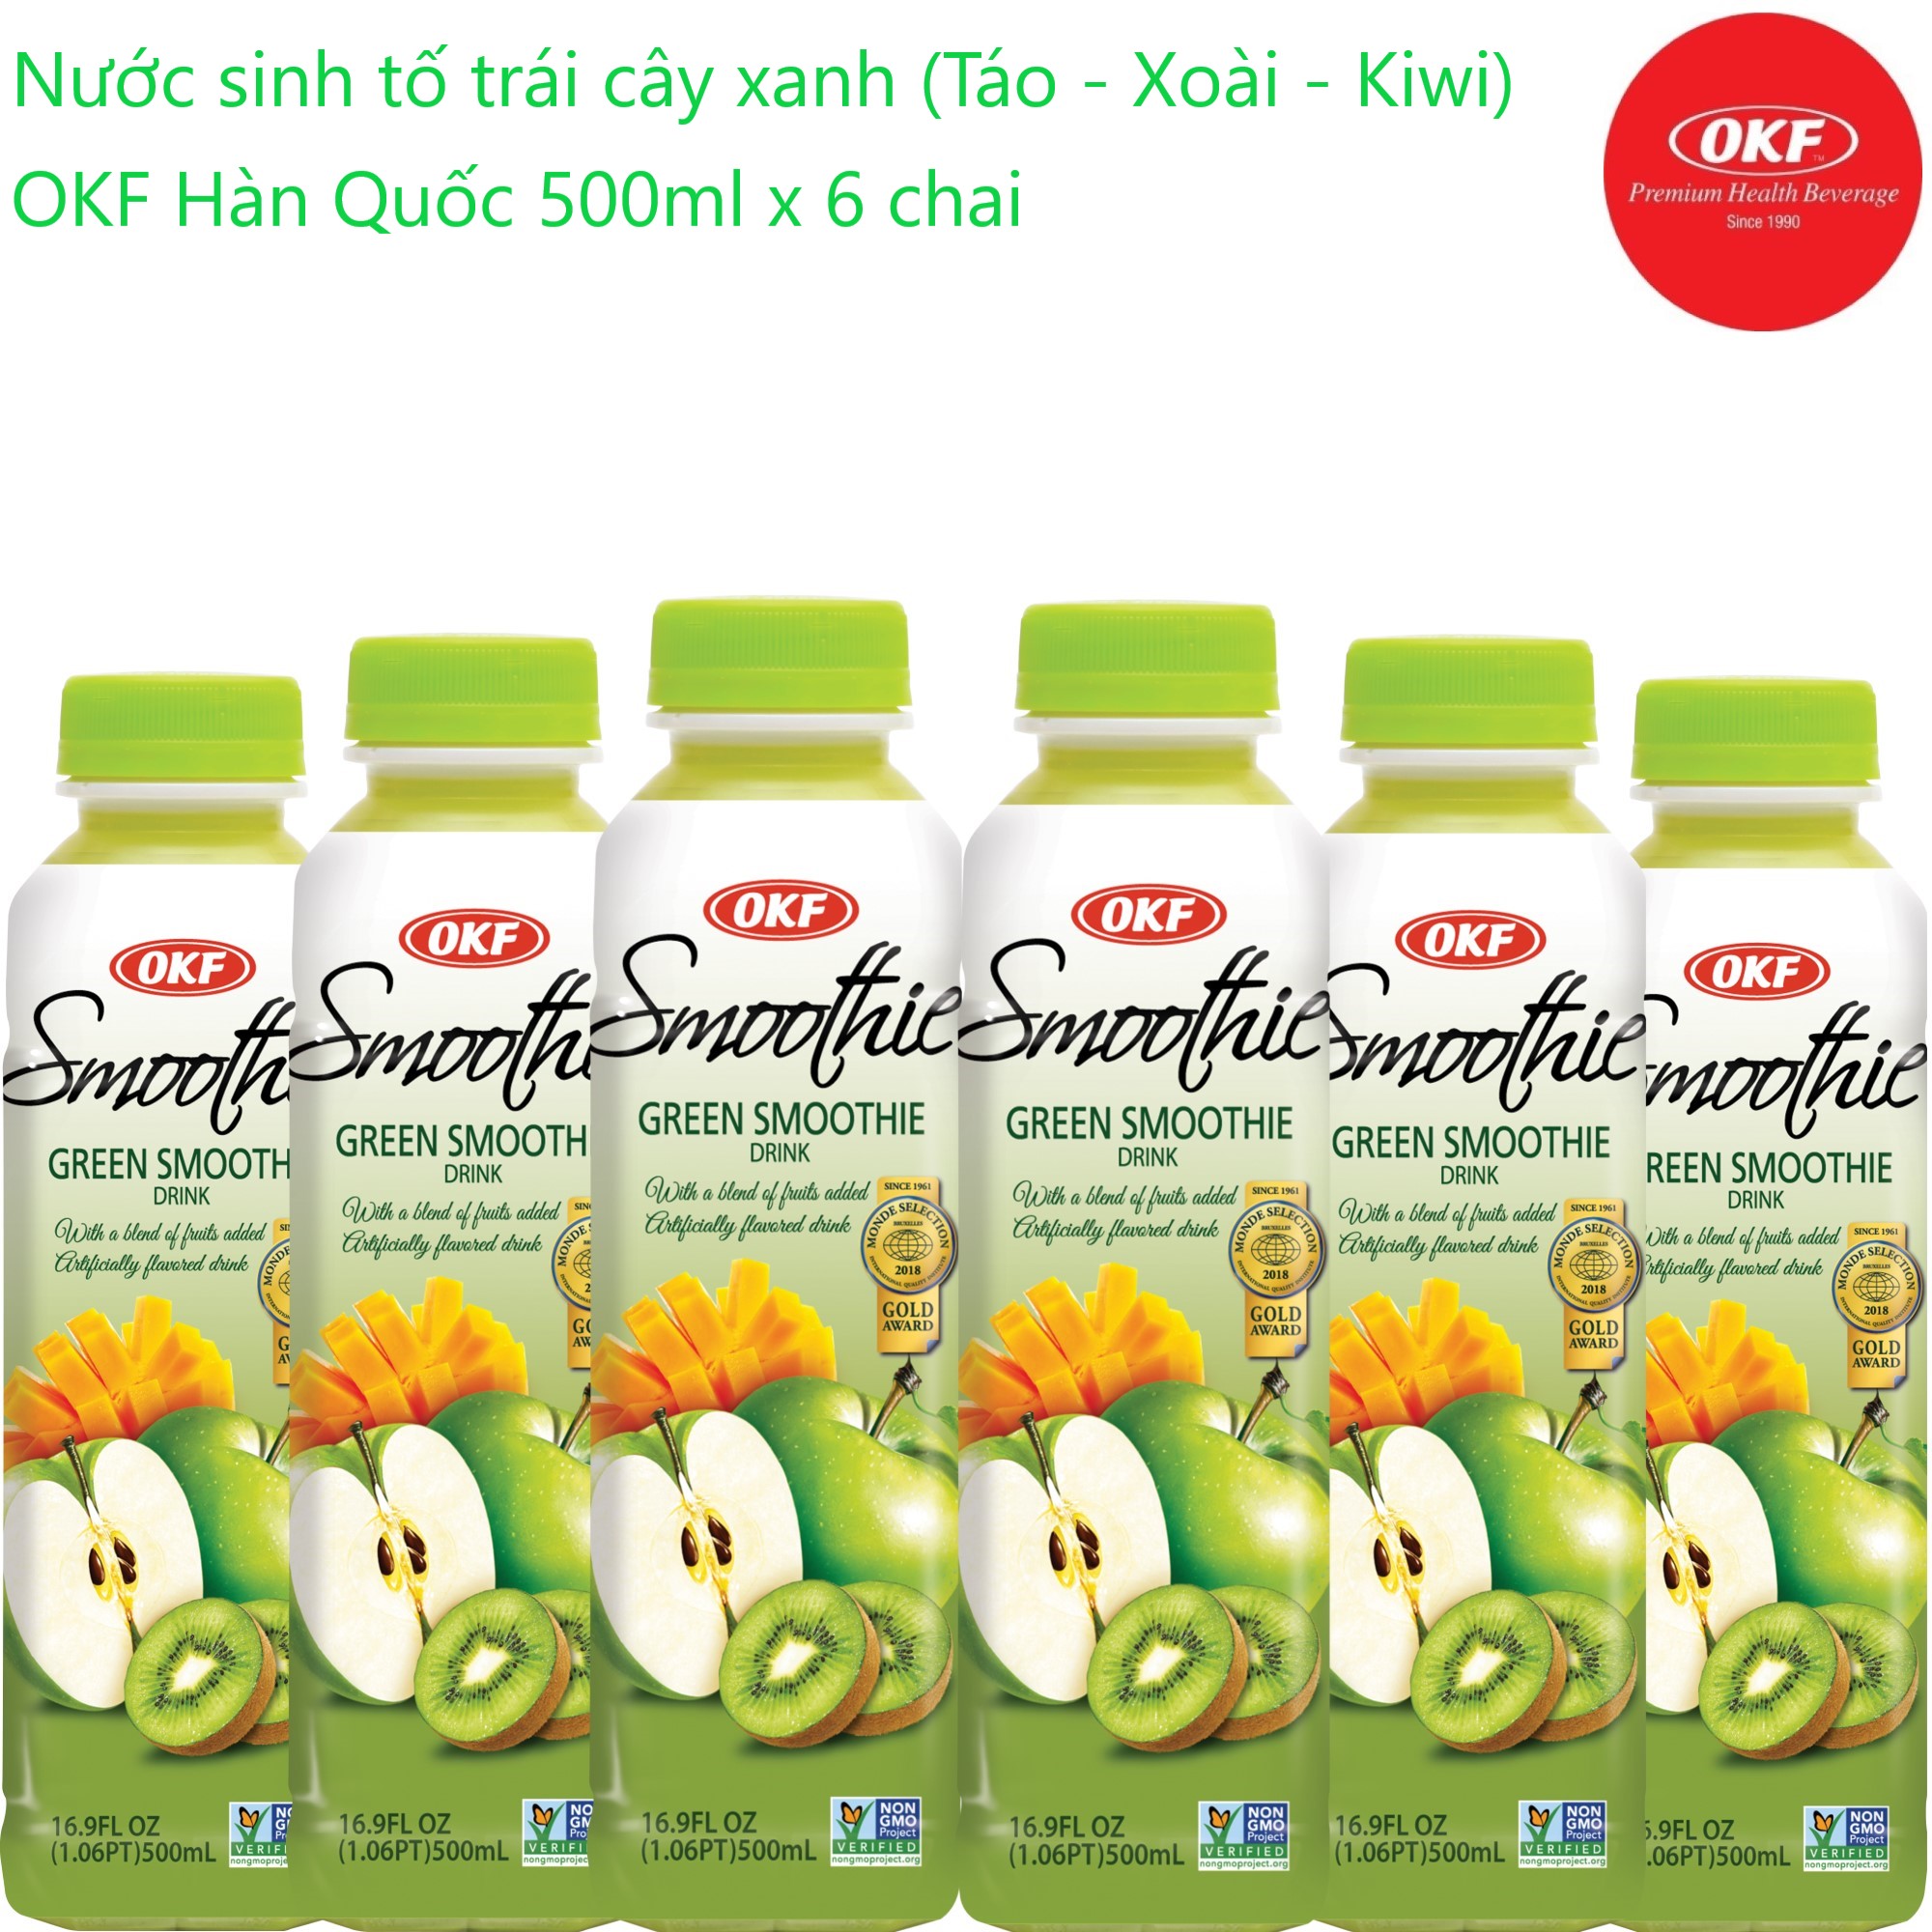 Nước sinh tố trái cây xanh (Táo - Xoài - Kiwi) OKF Hàn Quốc 500ml x 6 chai